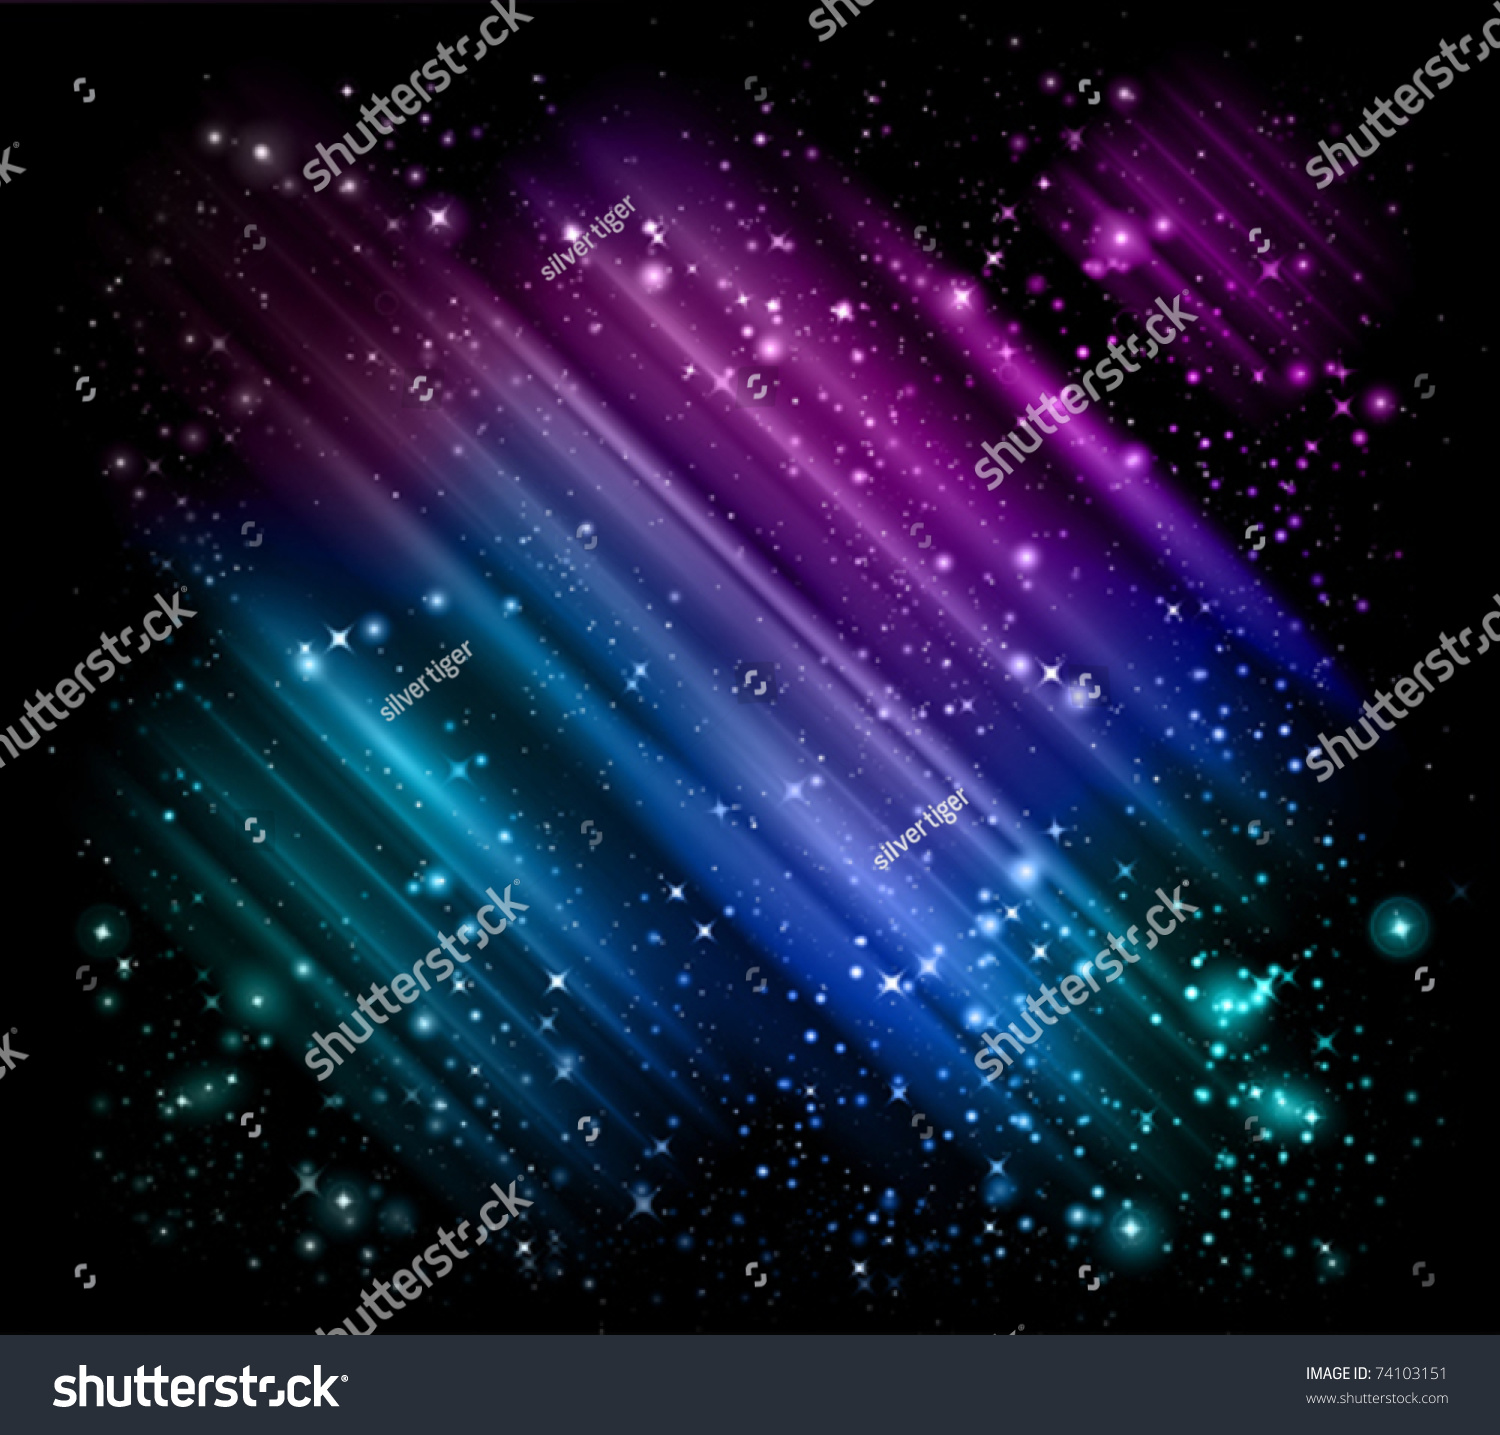 Vector Star Frame Background - 74103151 : Shutterstock